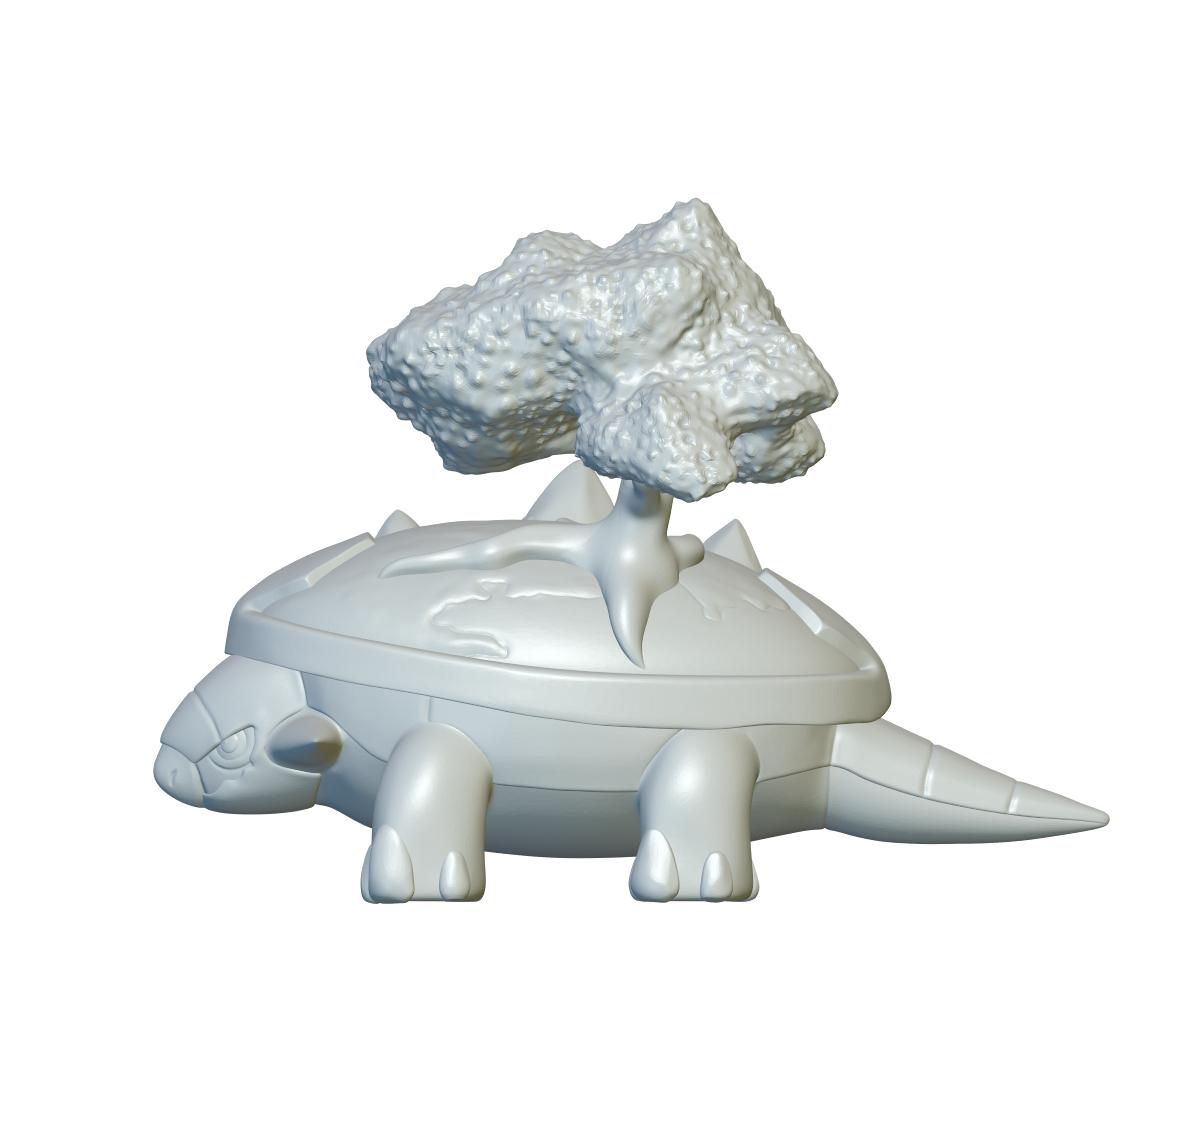 Pokemon Torterra #389 - Optimized for 3D Printing 3d model